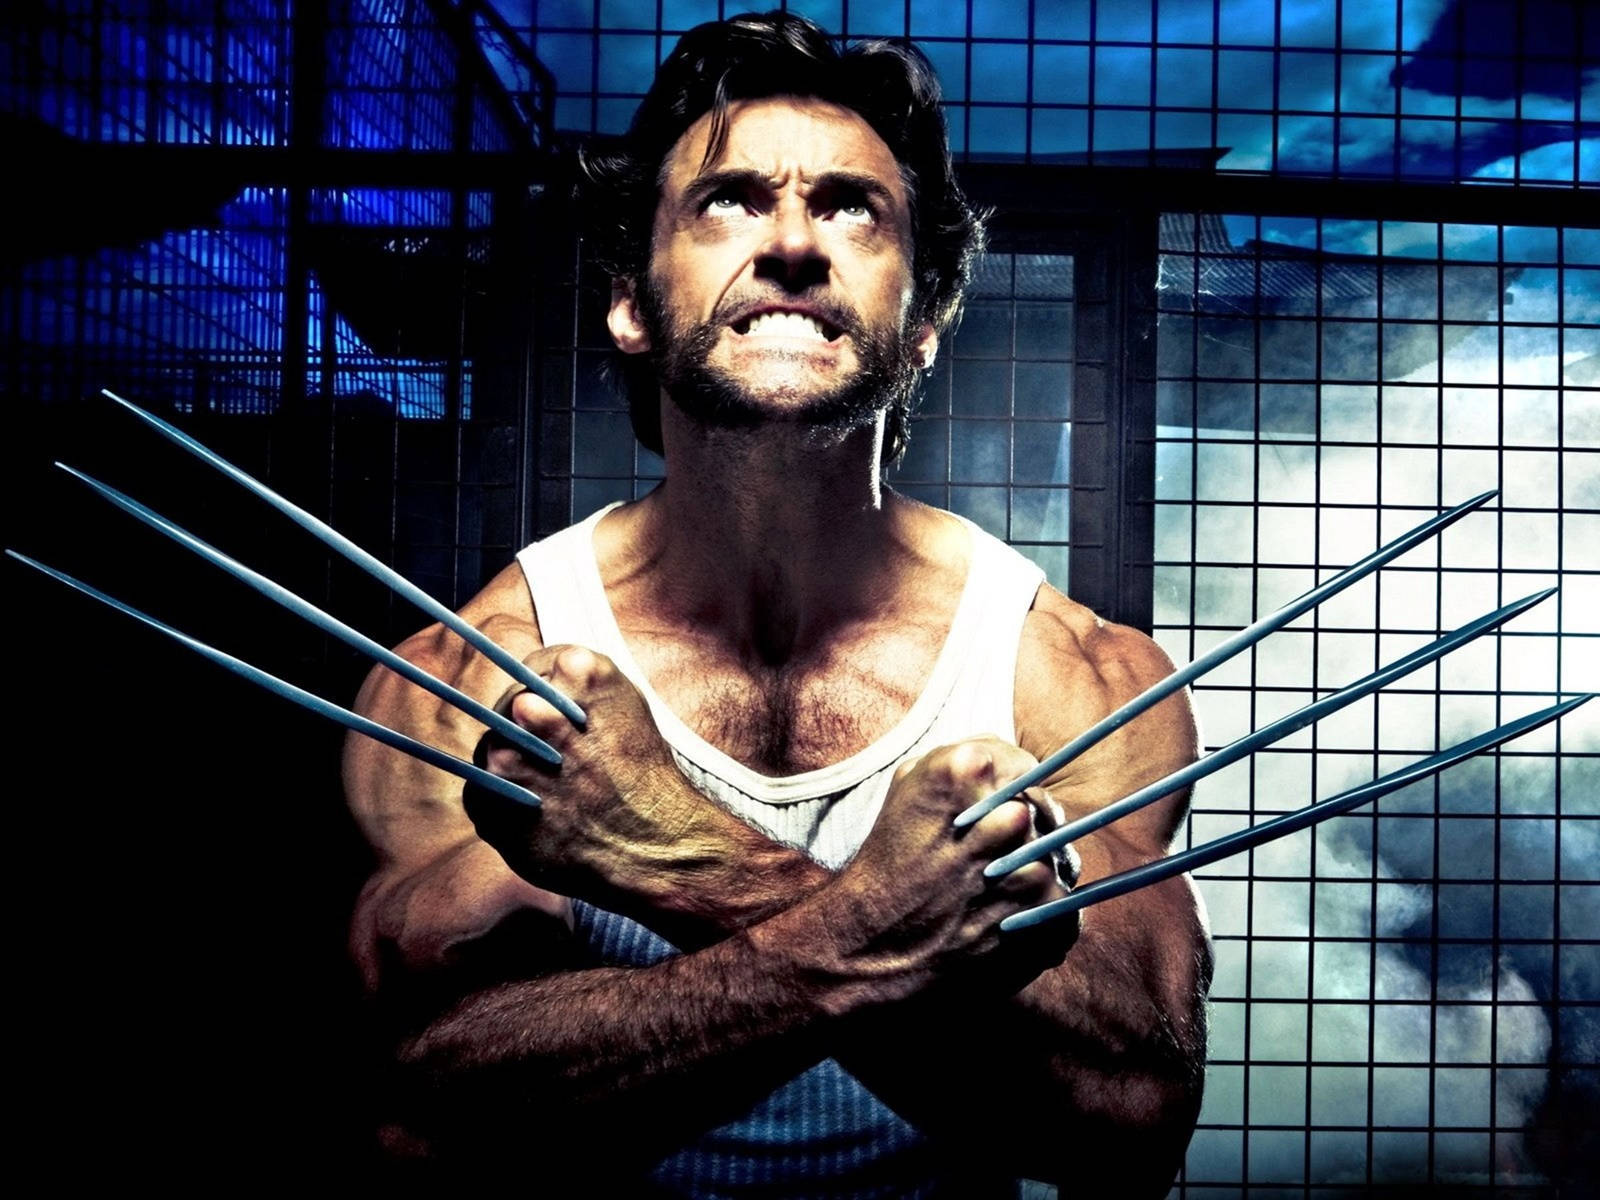 Xmen-filmen The Wolverine I Bur. Wallpaper